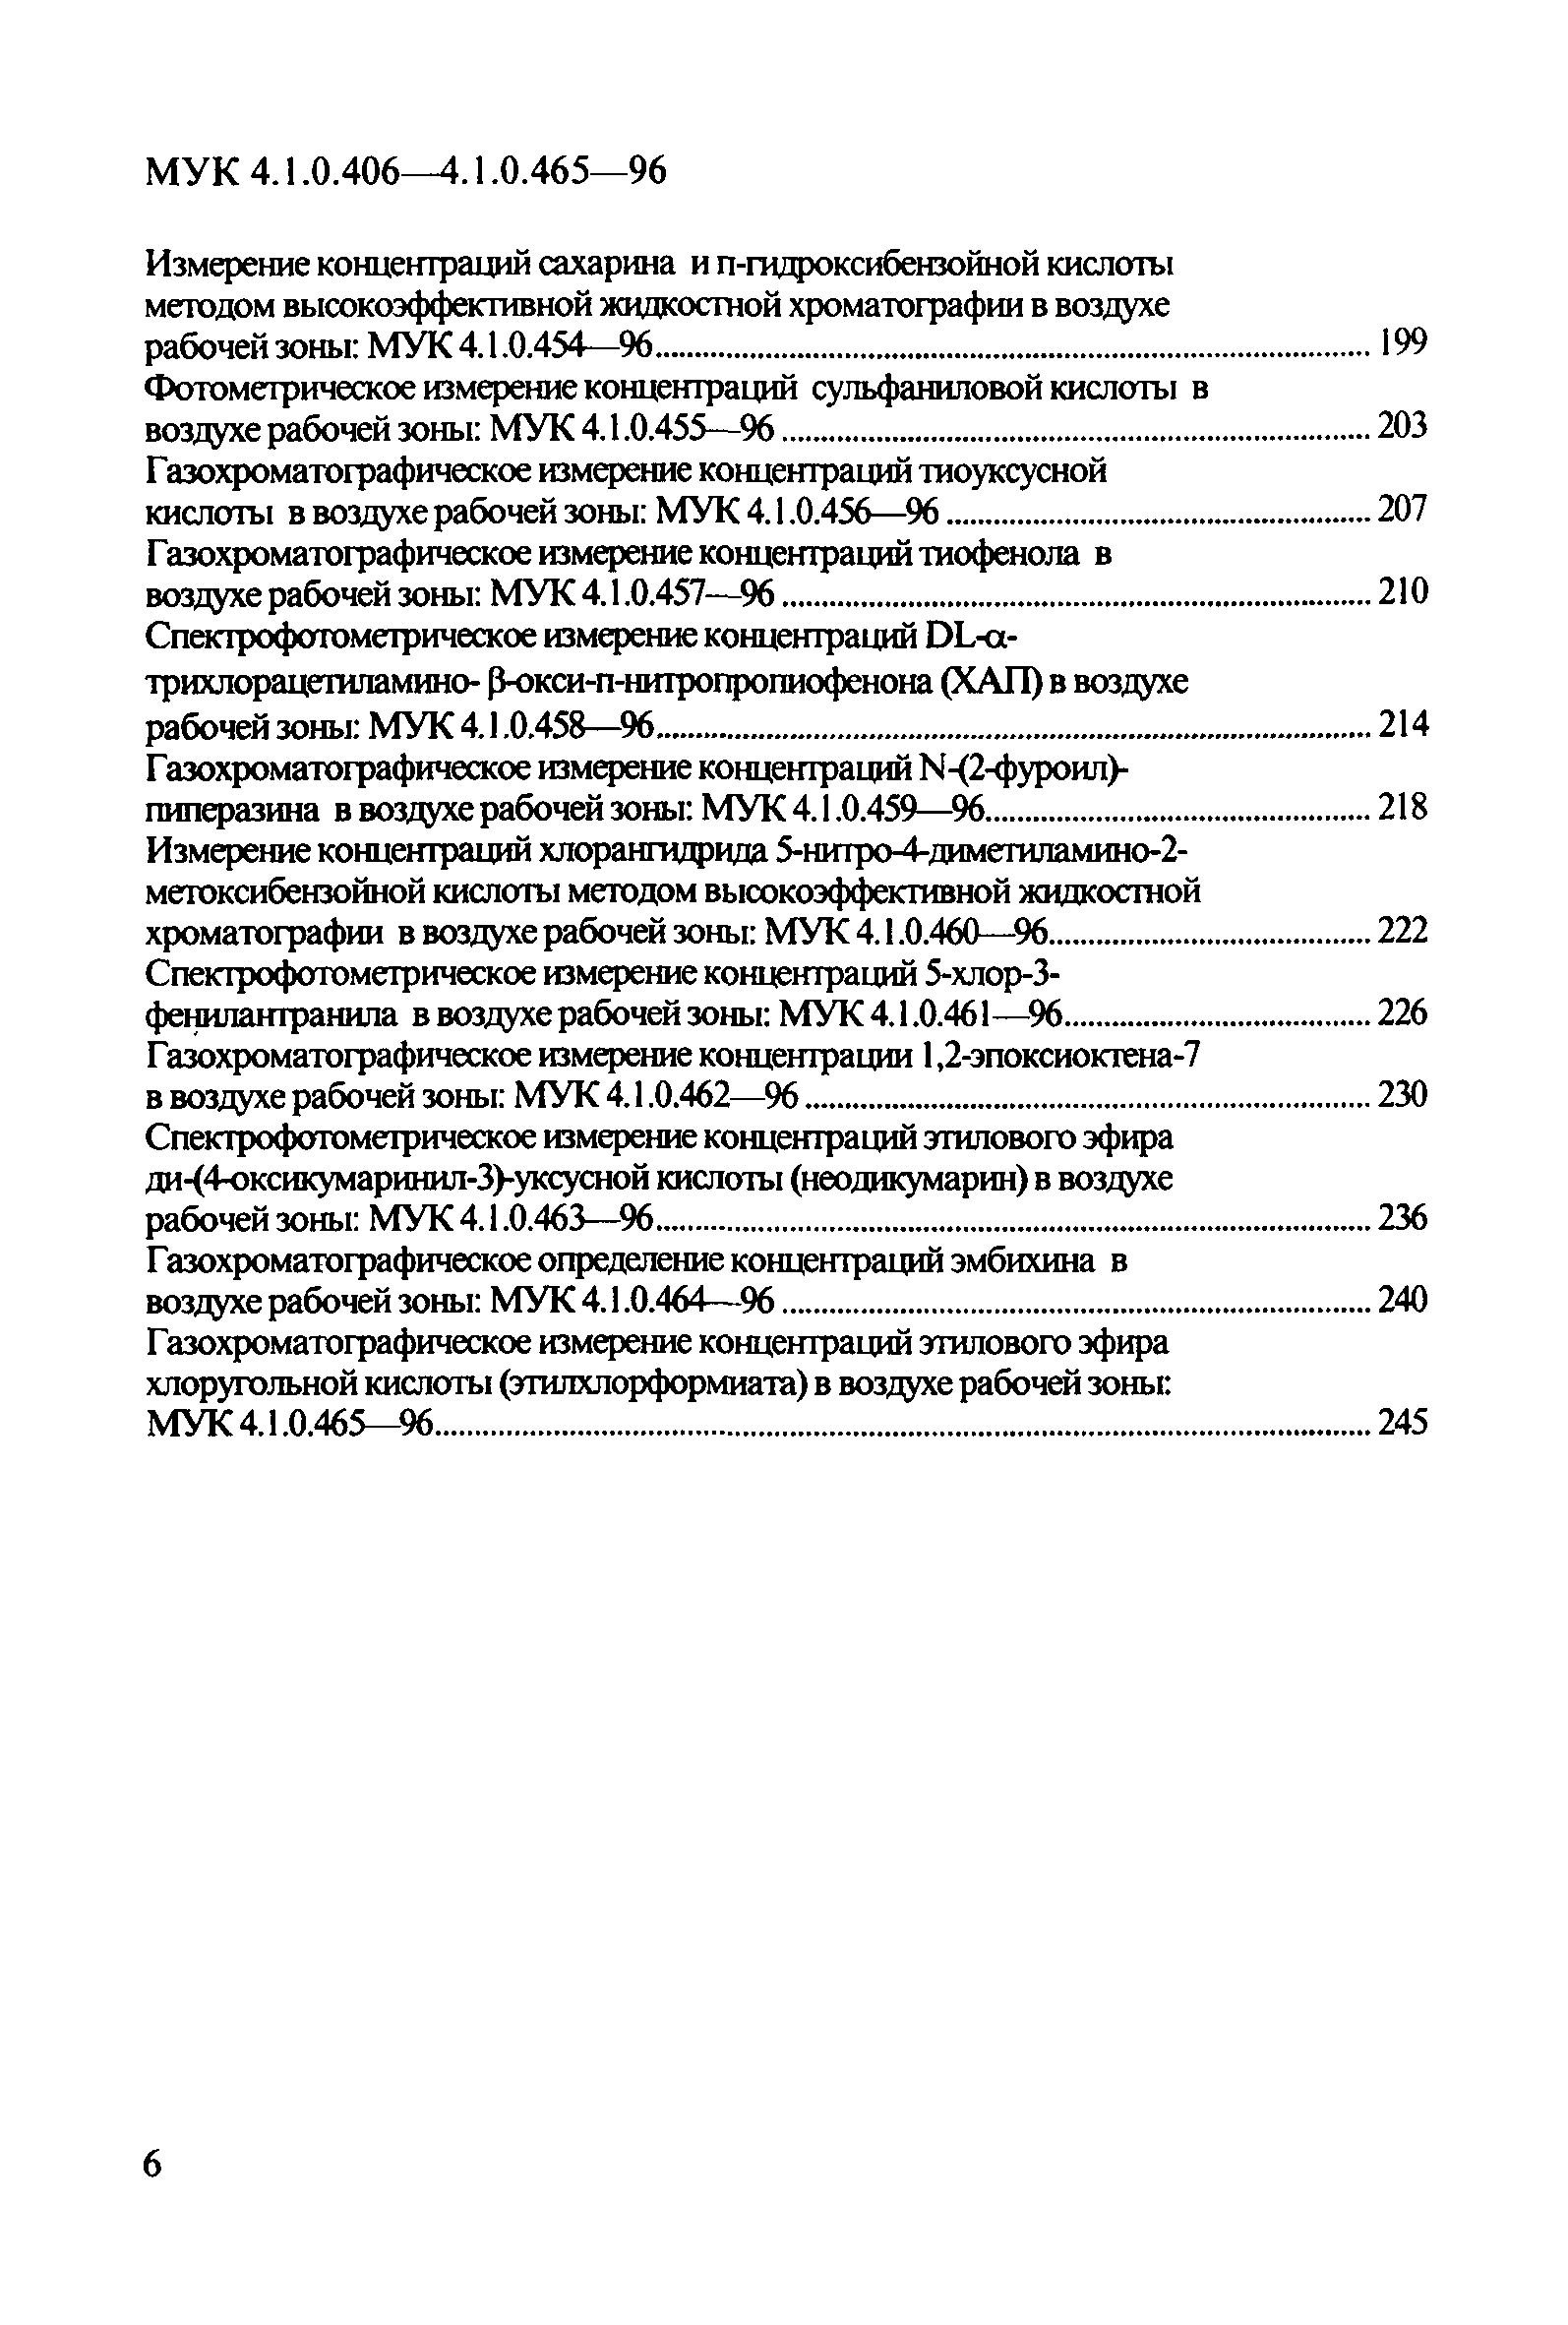 МУК 4.1.0.443-96